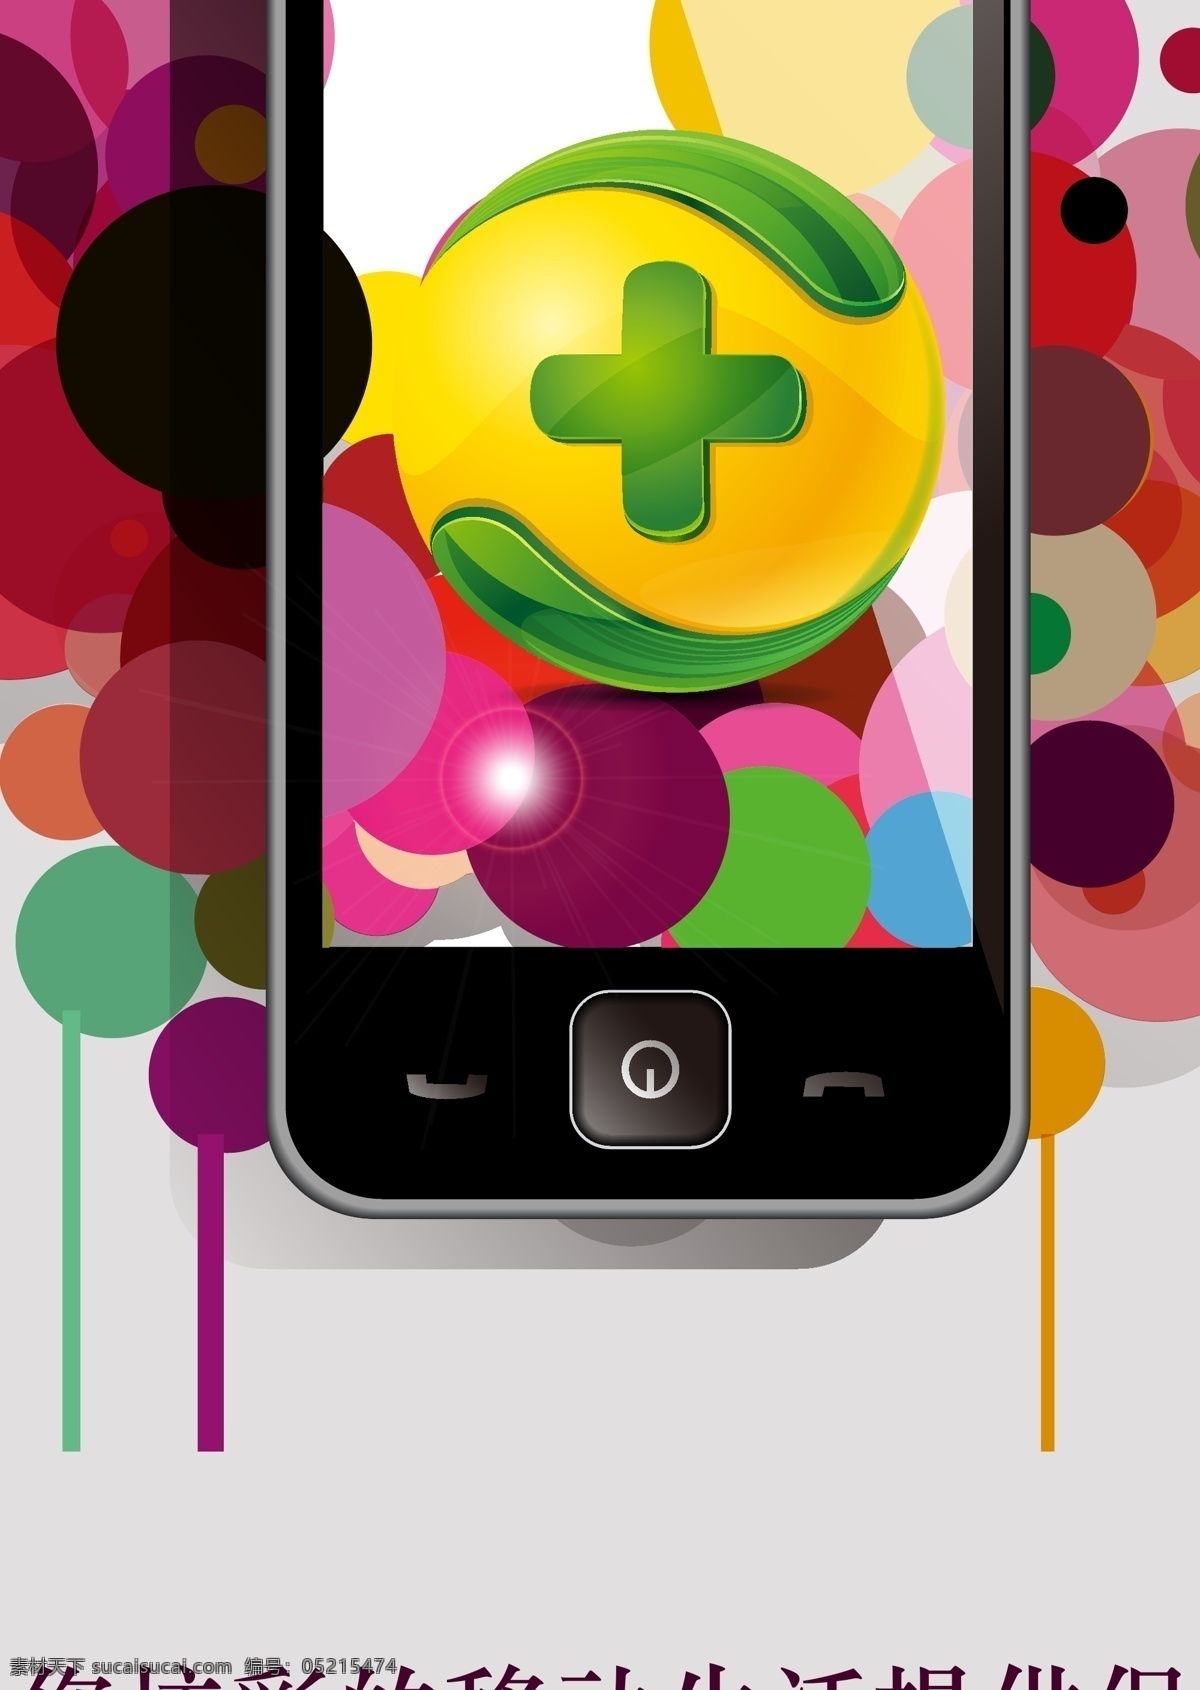 引领 生活 手机 手机app 招贴 招贴设计 卫士 手机安全 炫彩生活 彩色球 海报 其他海报设计